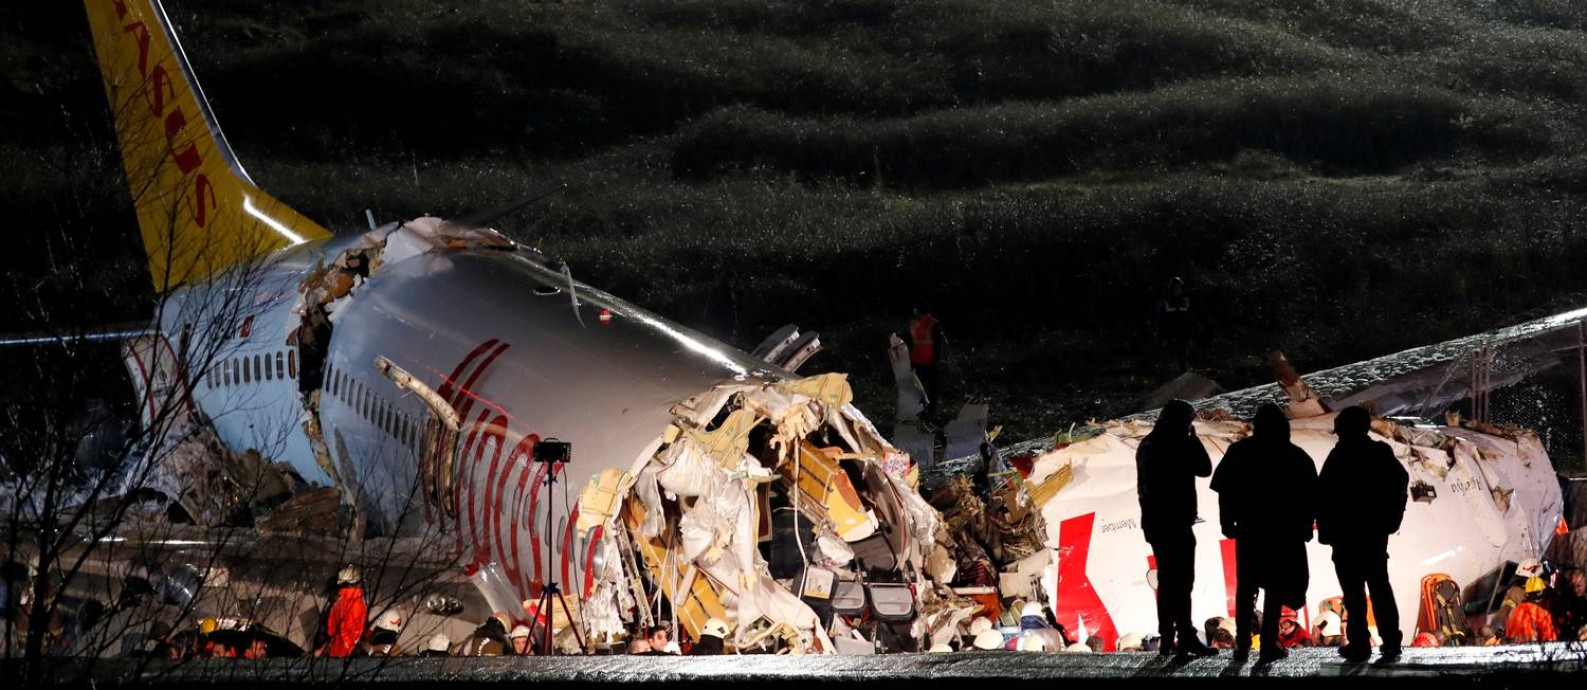 O avião com 177 passageiros e seis tripulantes a bordo se partiu em três e sofreu uma explosão depois de derrapar na pista do Aeroporto Sabiha Goksen, em Istambul, na Turquia Foto: MURAD SEZER / REUTERS